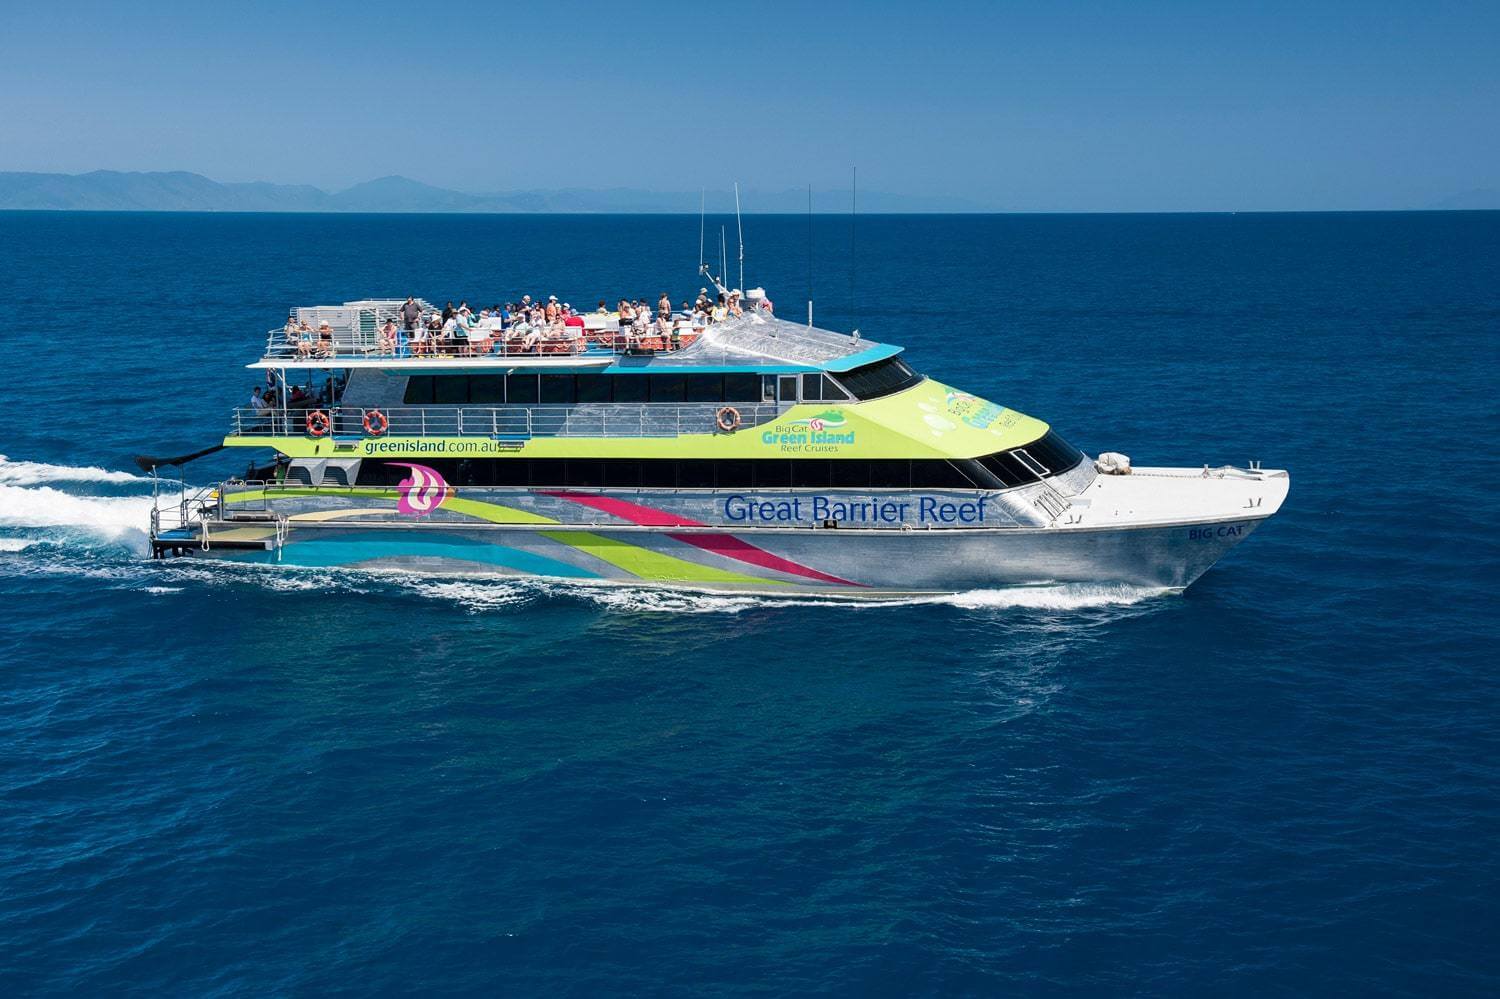 Big Cat Green Island Reef Cruises "Big Cat" Boats